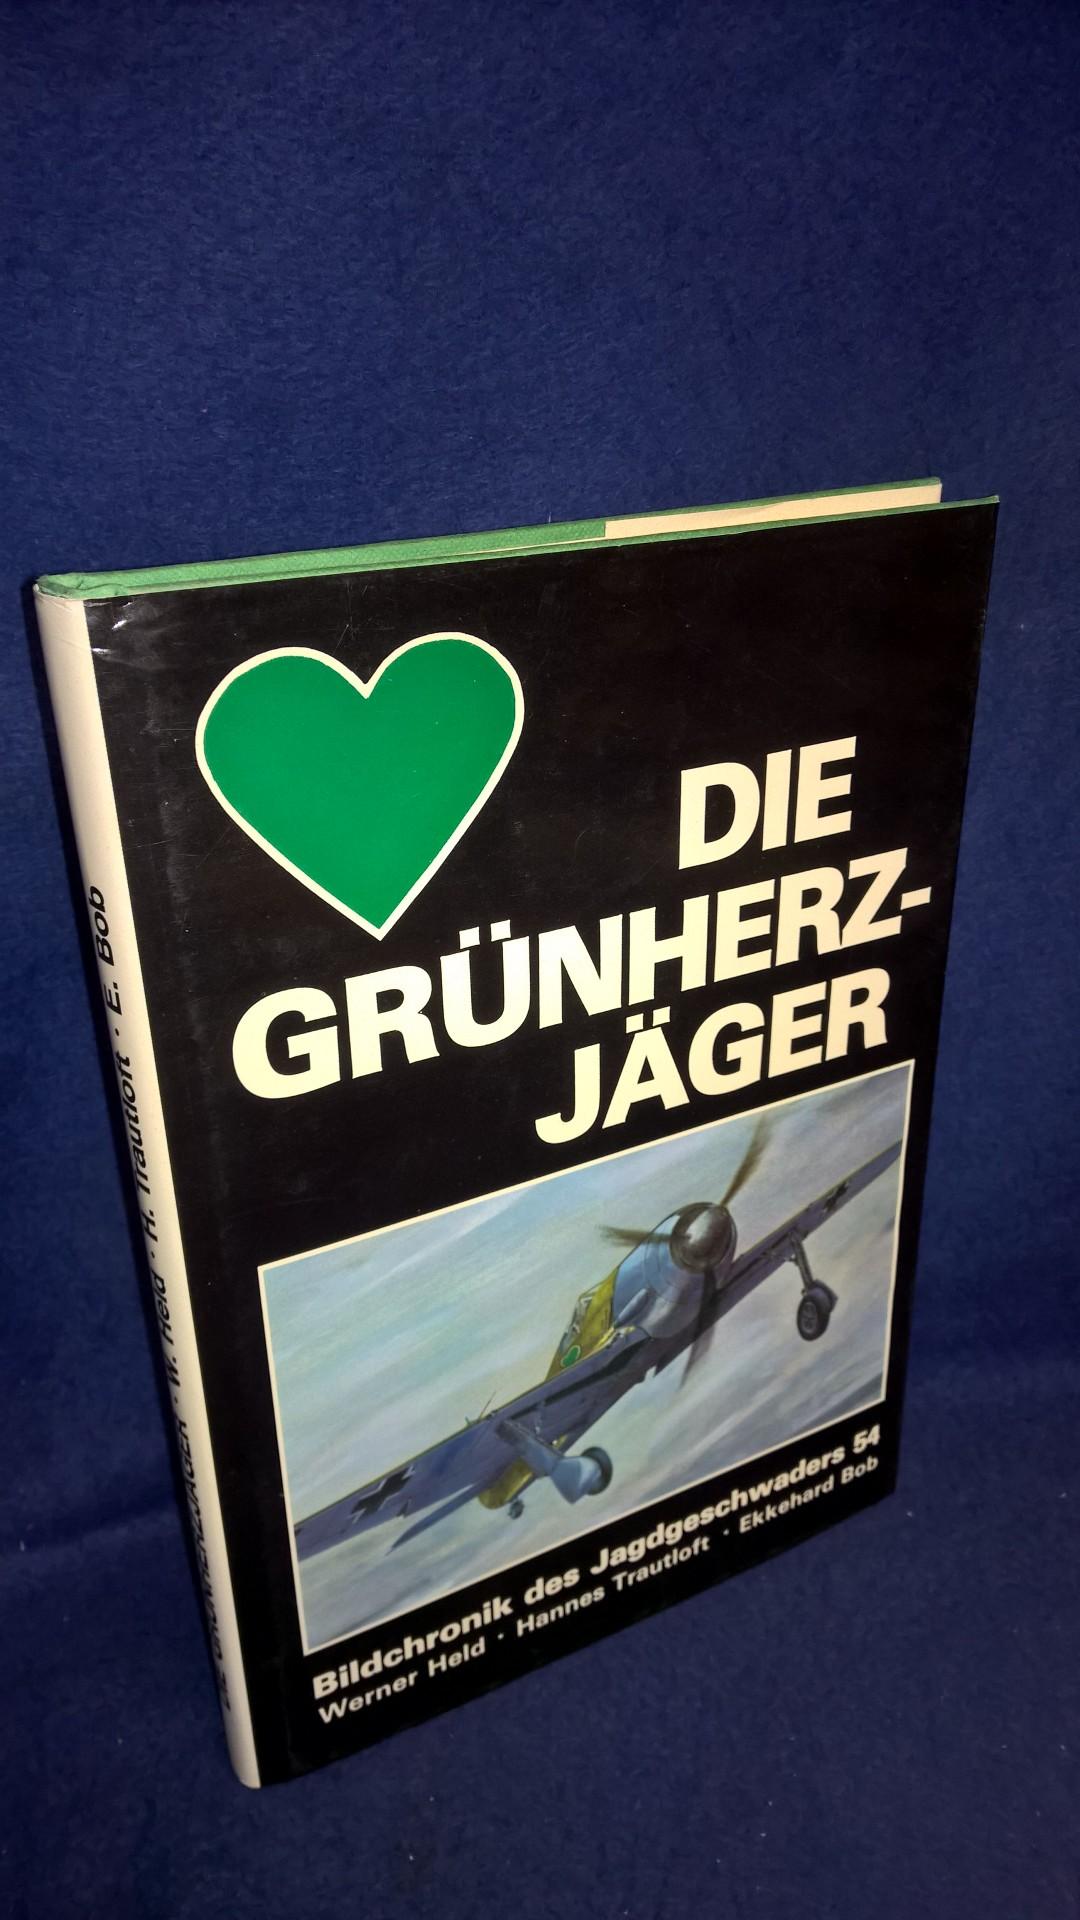 Die Grünherz-Jäger - Bildchronik des Jagdgeschwaders 54.